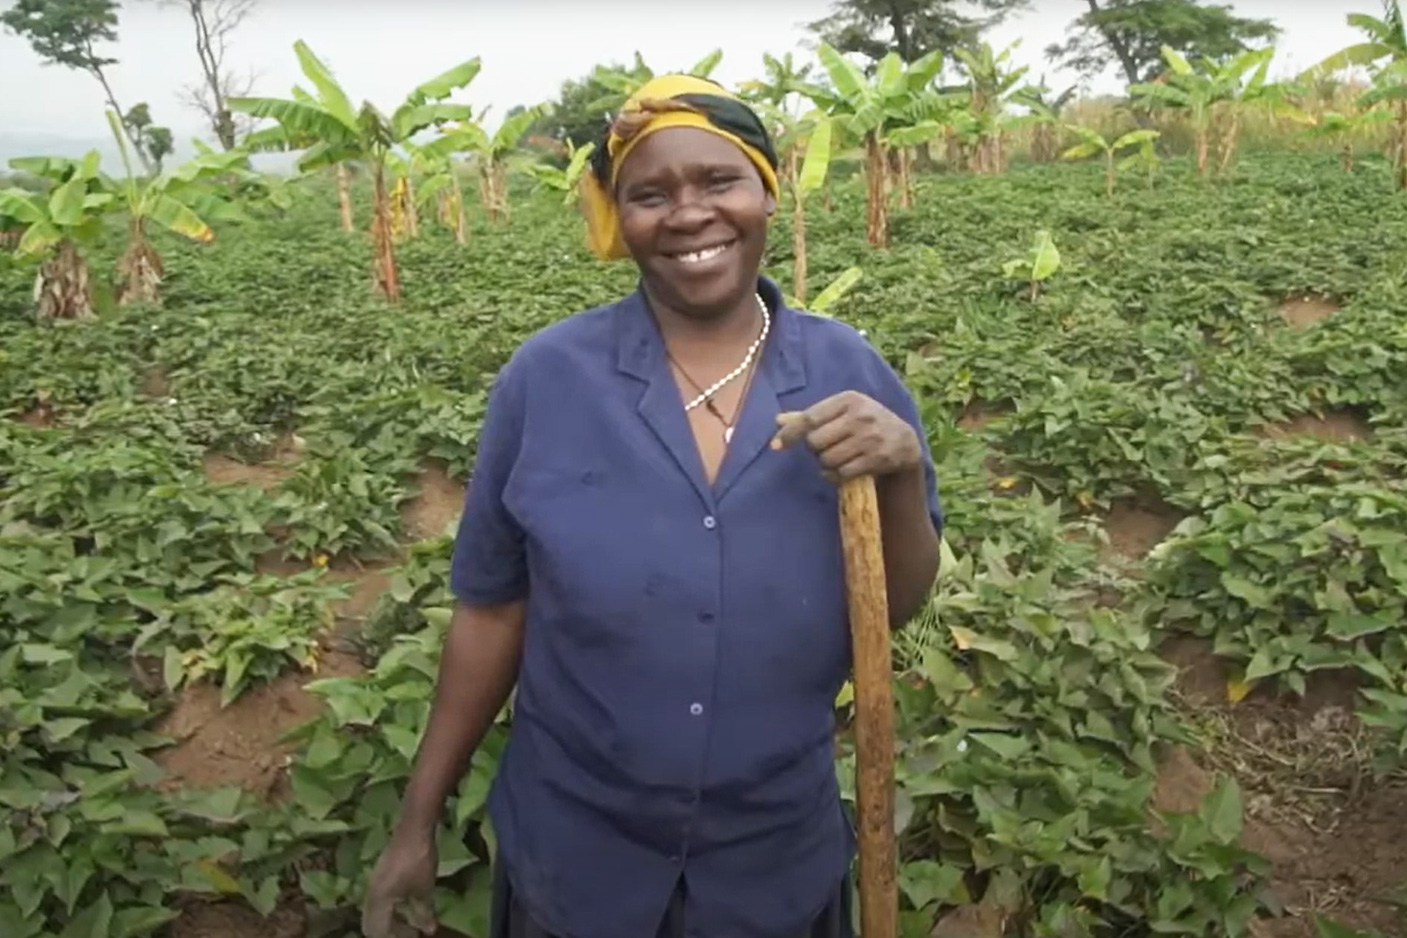 A farmer in Uganda